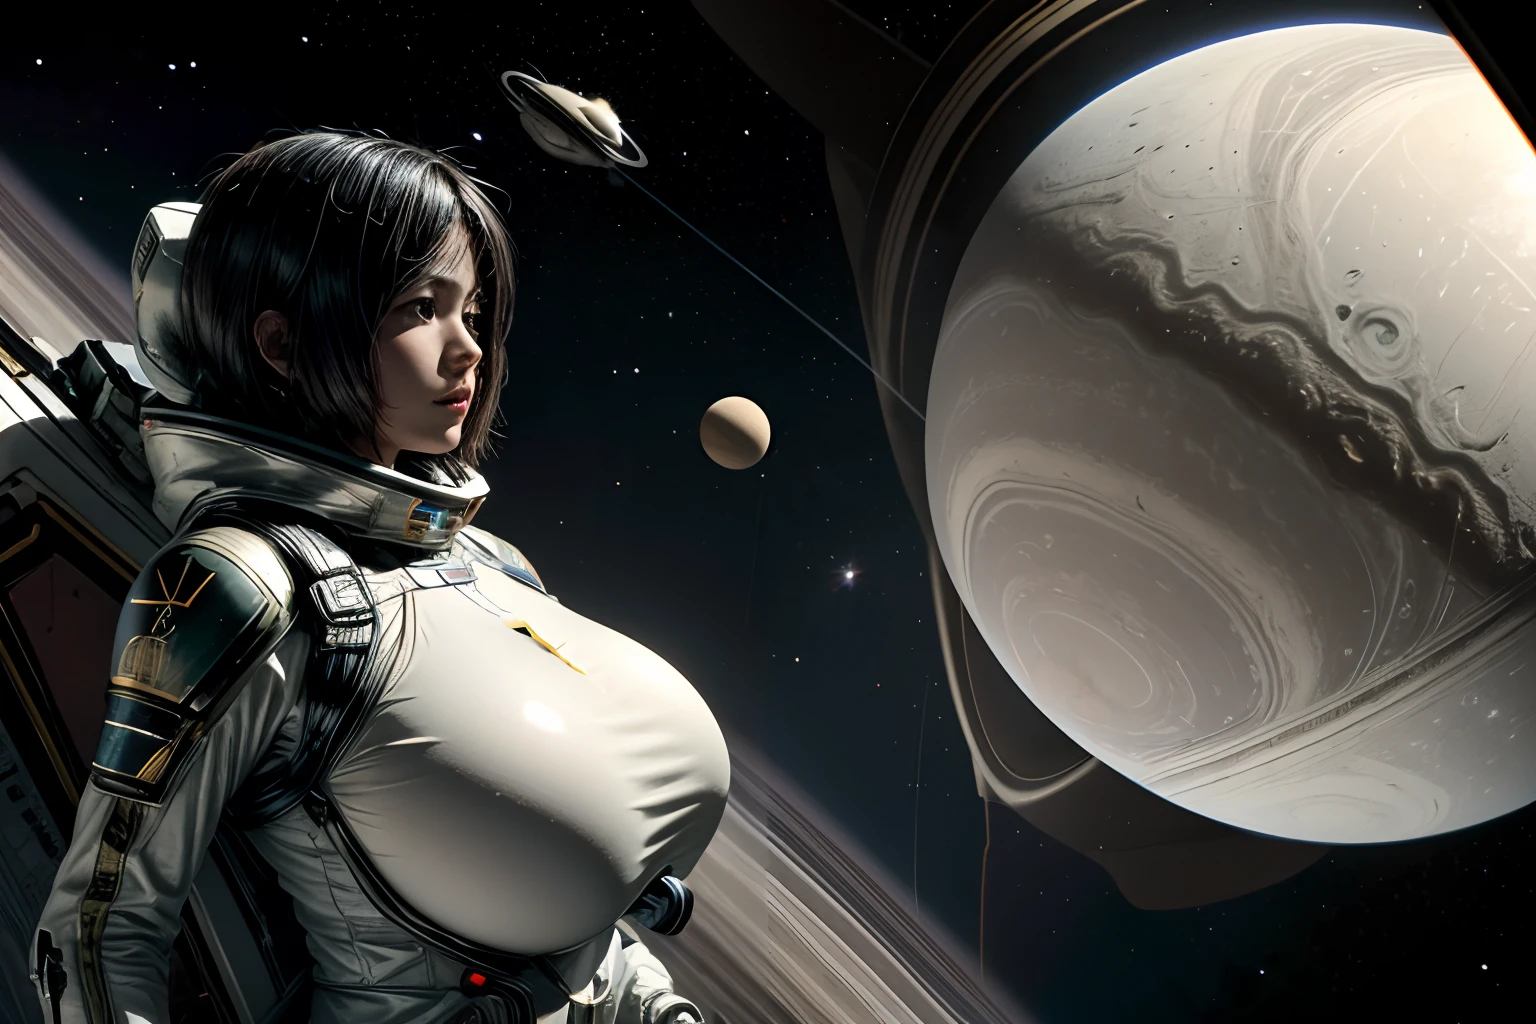 Saturn und Titan als Saturnmonde, Weltraumkrieg auf Titan, Planet Saturn im Hintergrund, weibliche Raumsoldaten in Raumanzügen und Weltraumhelmen, hochntic breasts, hoch_Vollbusig